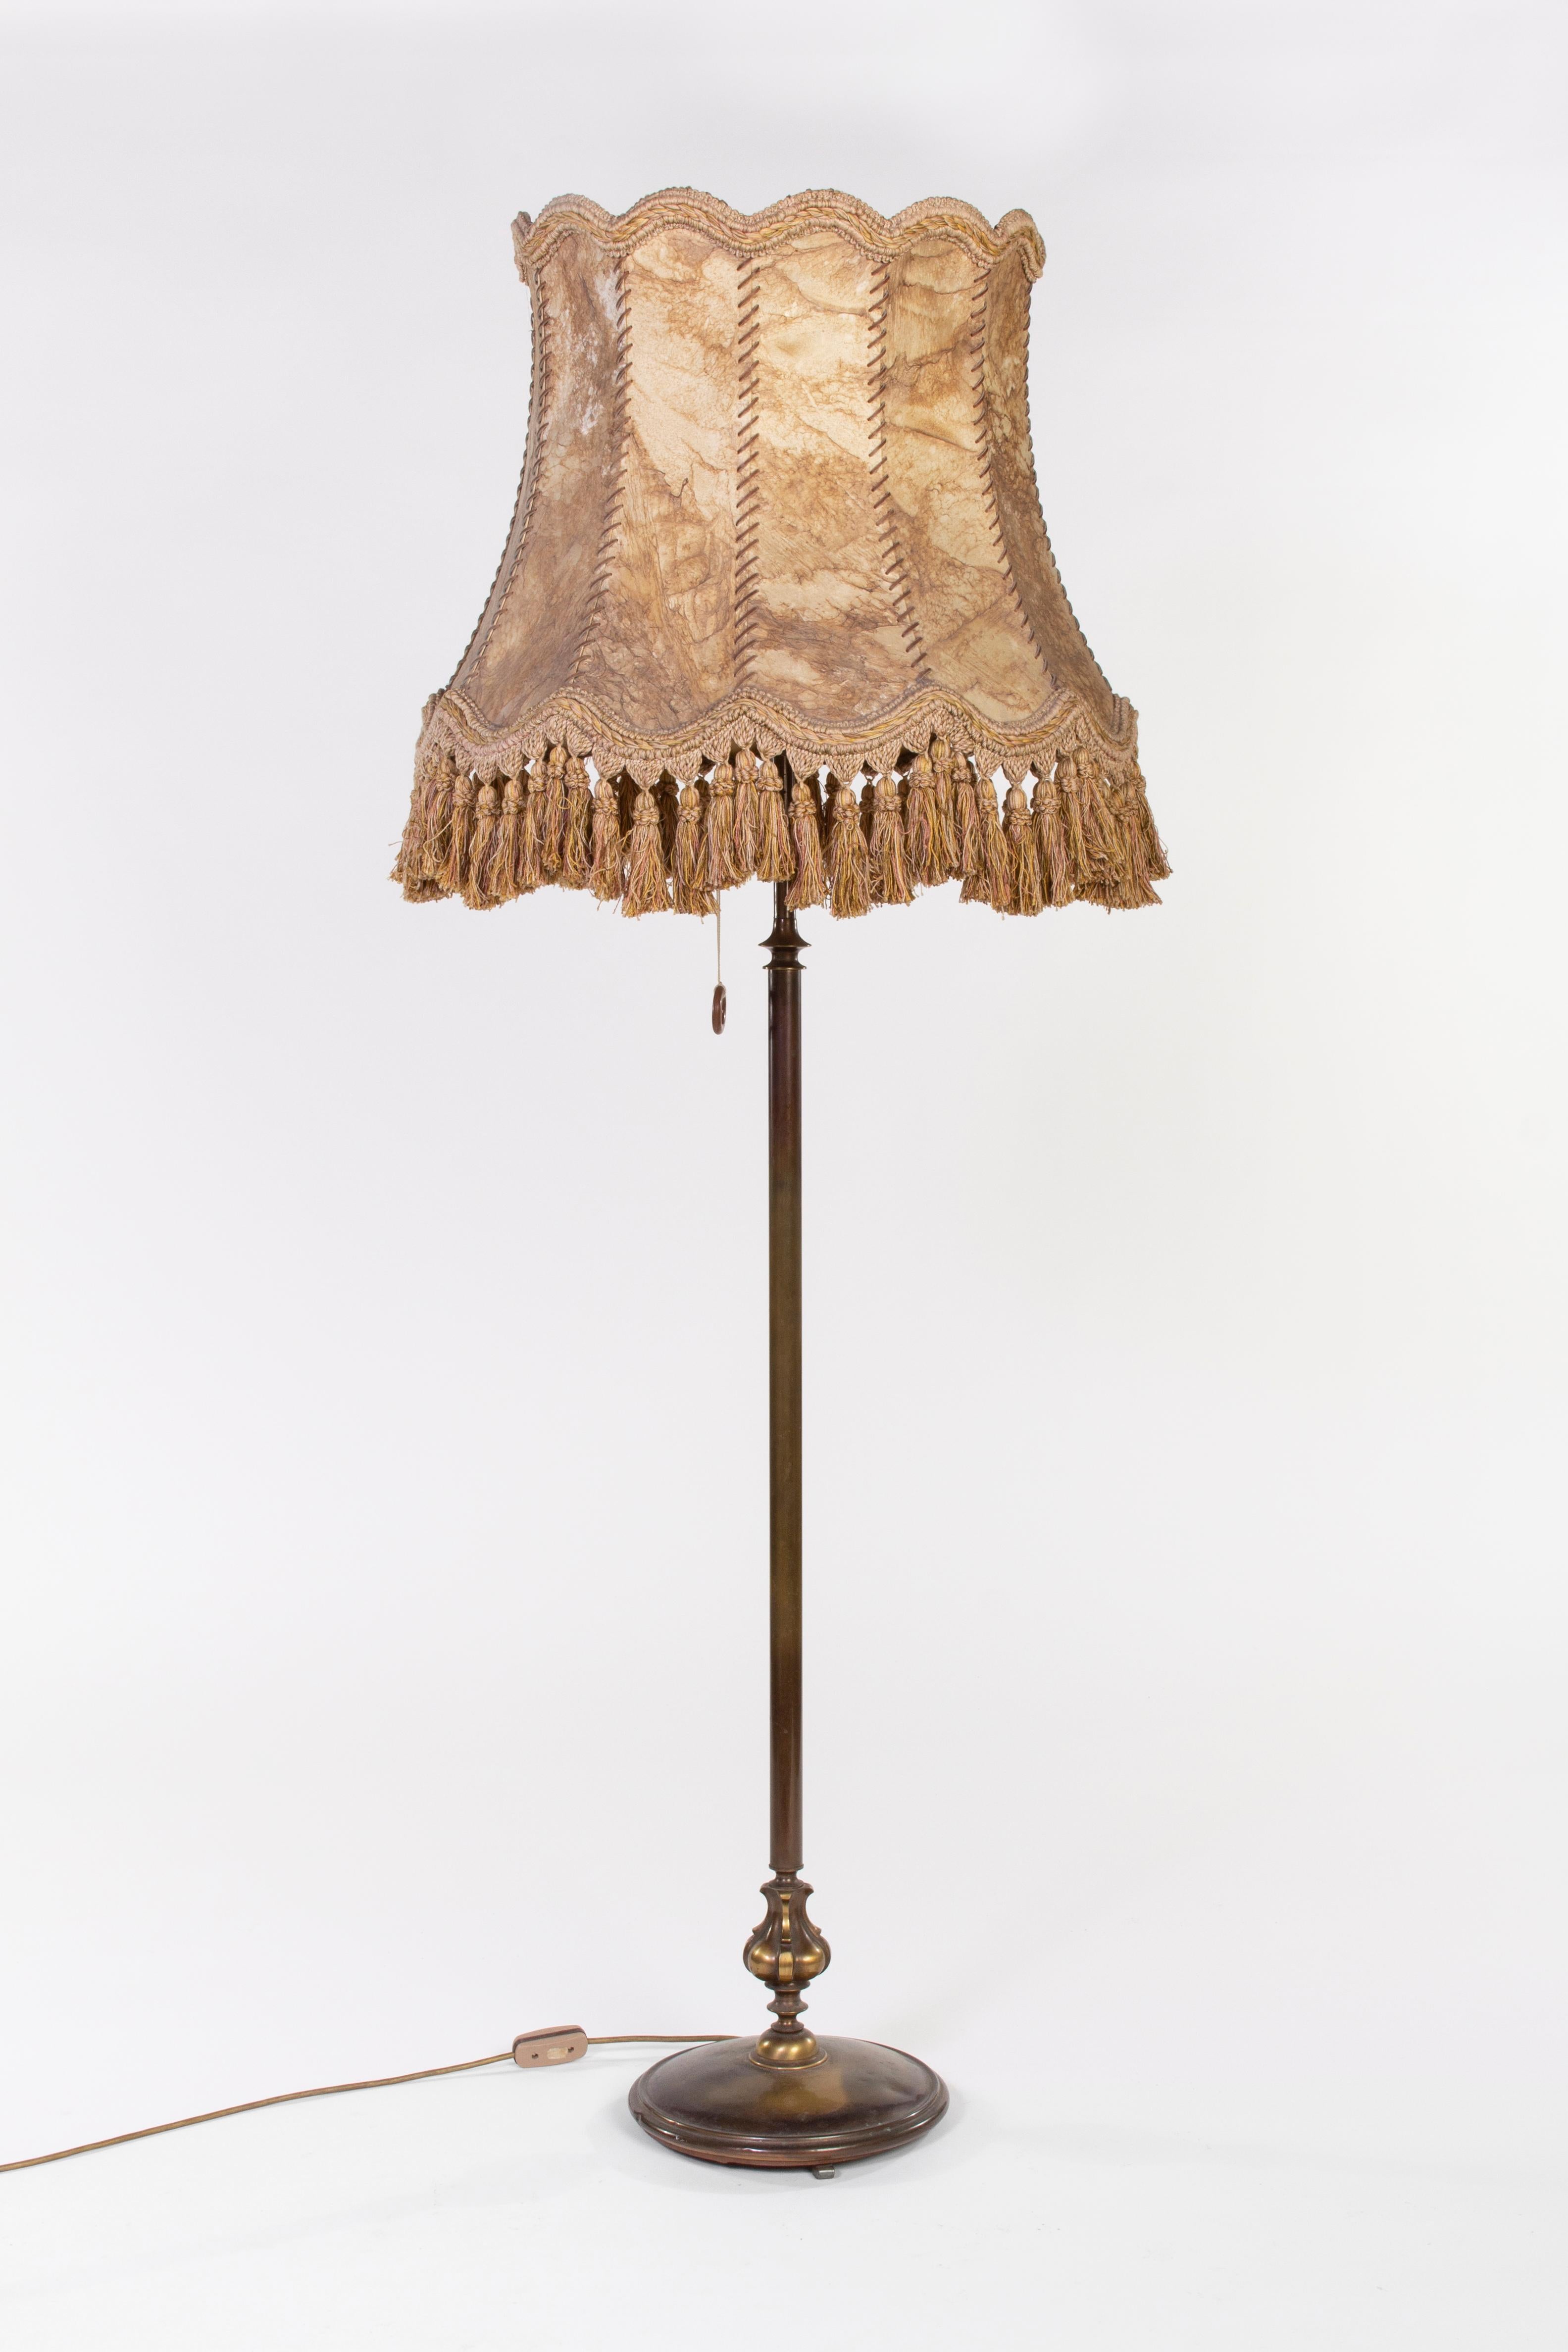 Vintage Stehlampe aus Frankreich mit beigem Lederschirm, Messingdekoration und Kupfersockel. Die Lampe ist in perfektem Zustand.